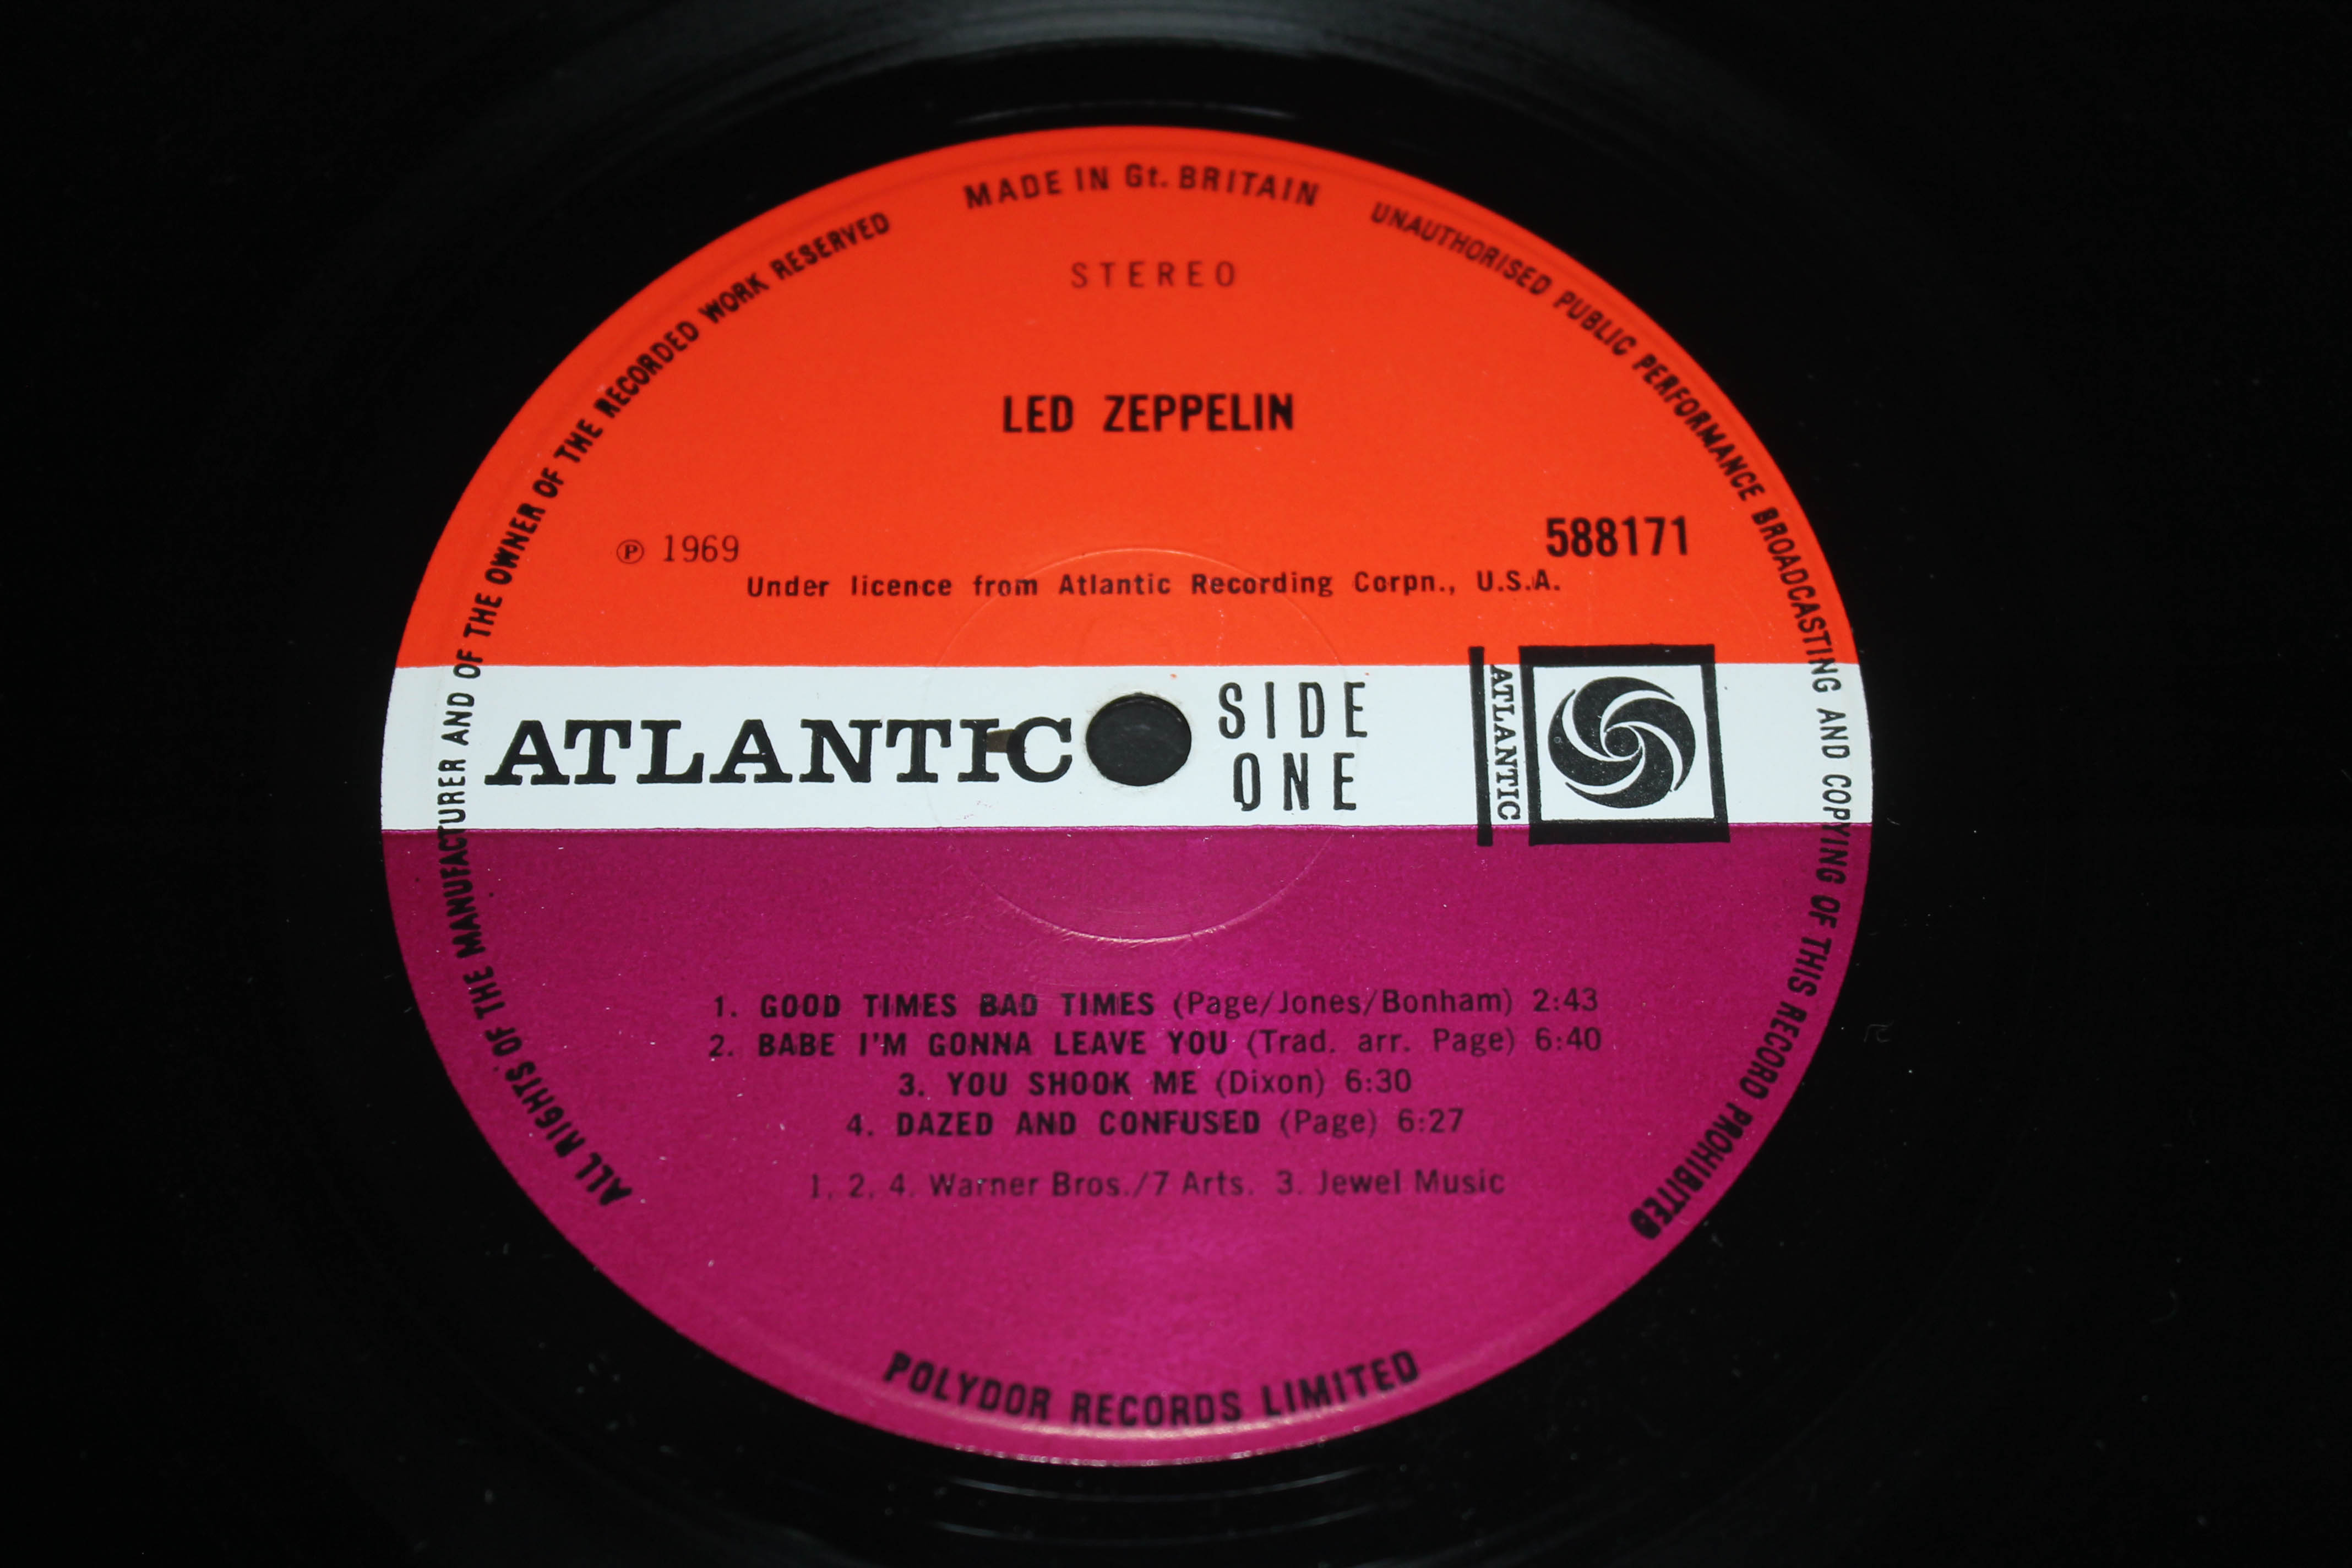 Led Zeppelin - Led Zepplin UK 1968 later pressing stereo LP Atlantic 588171 - Image 4 of 6